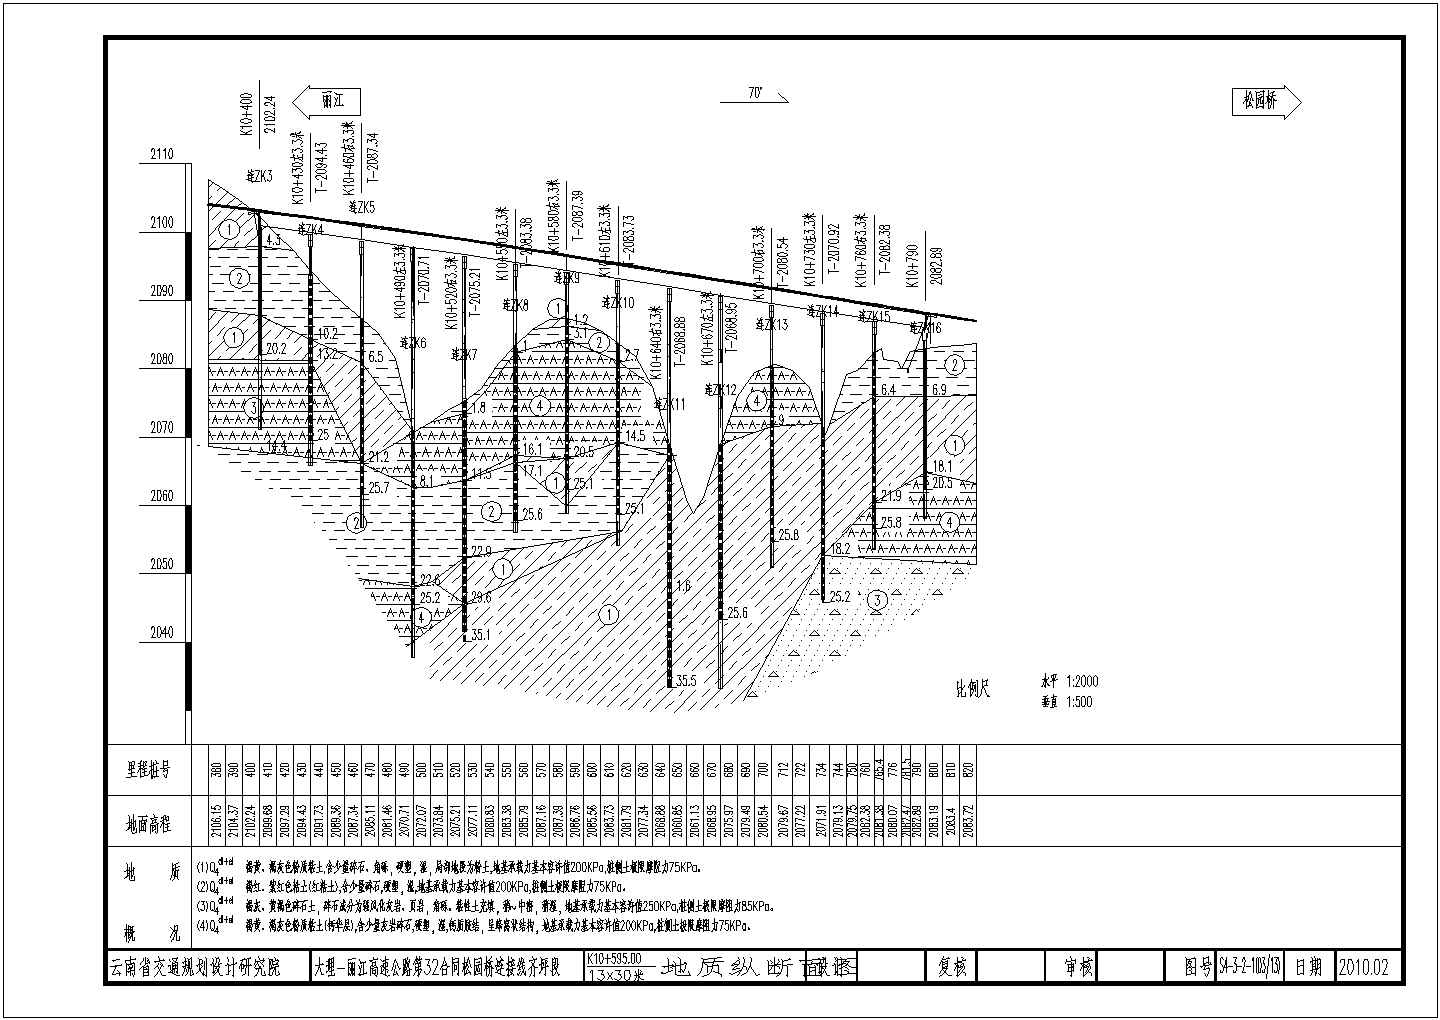 钢筋混凝土T形连续梁桥施工图